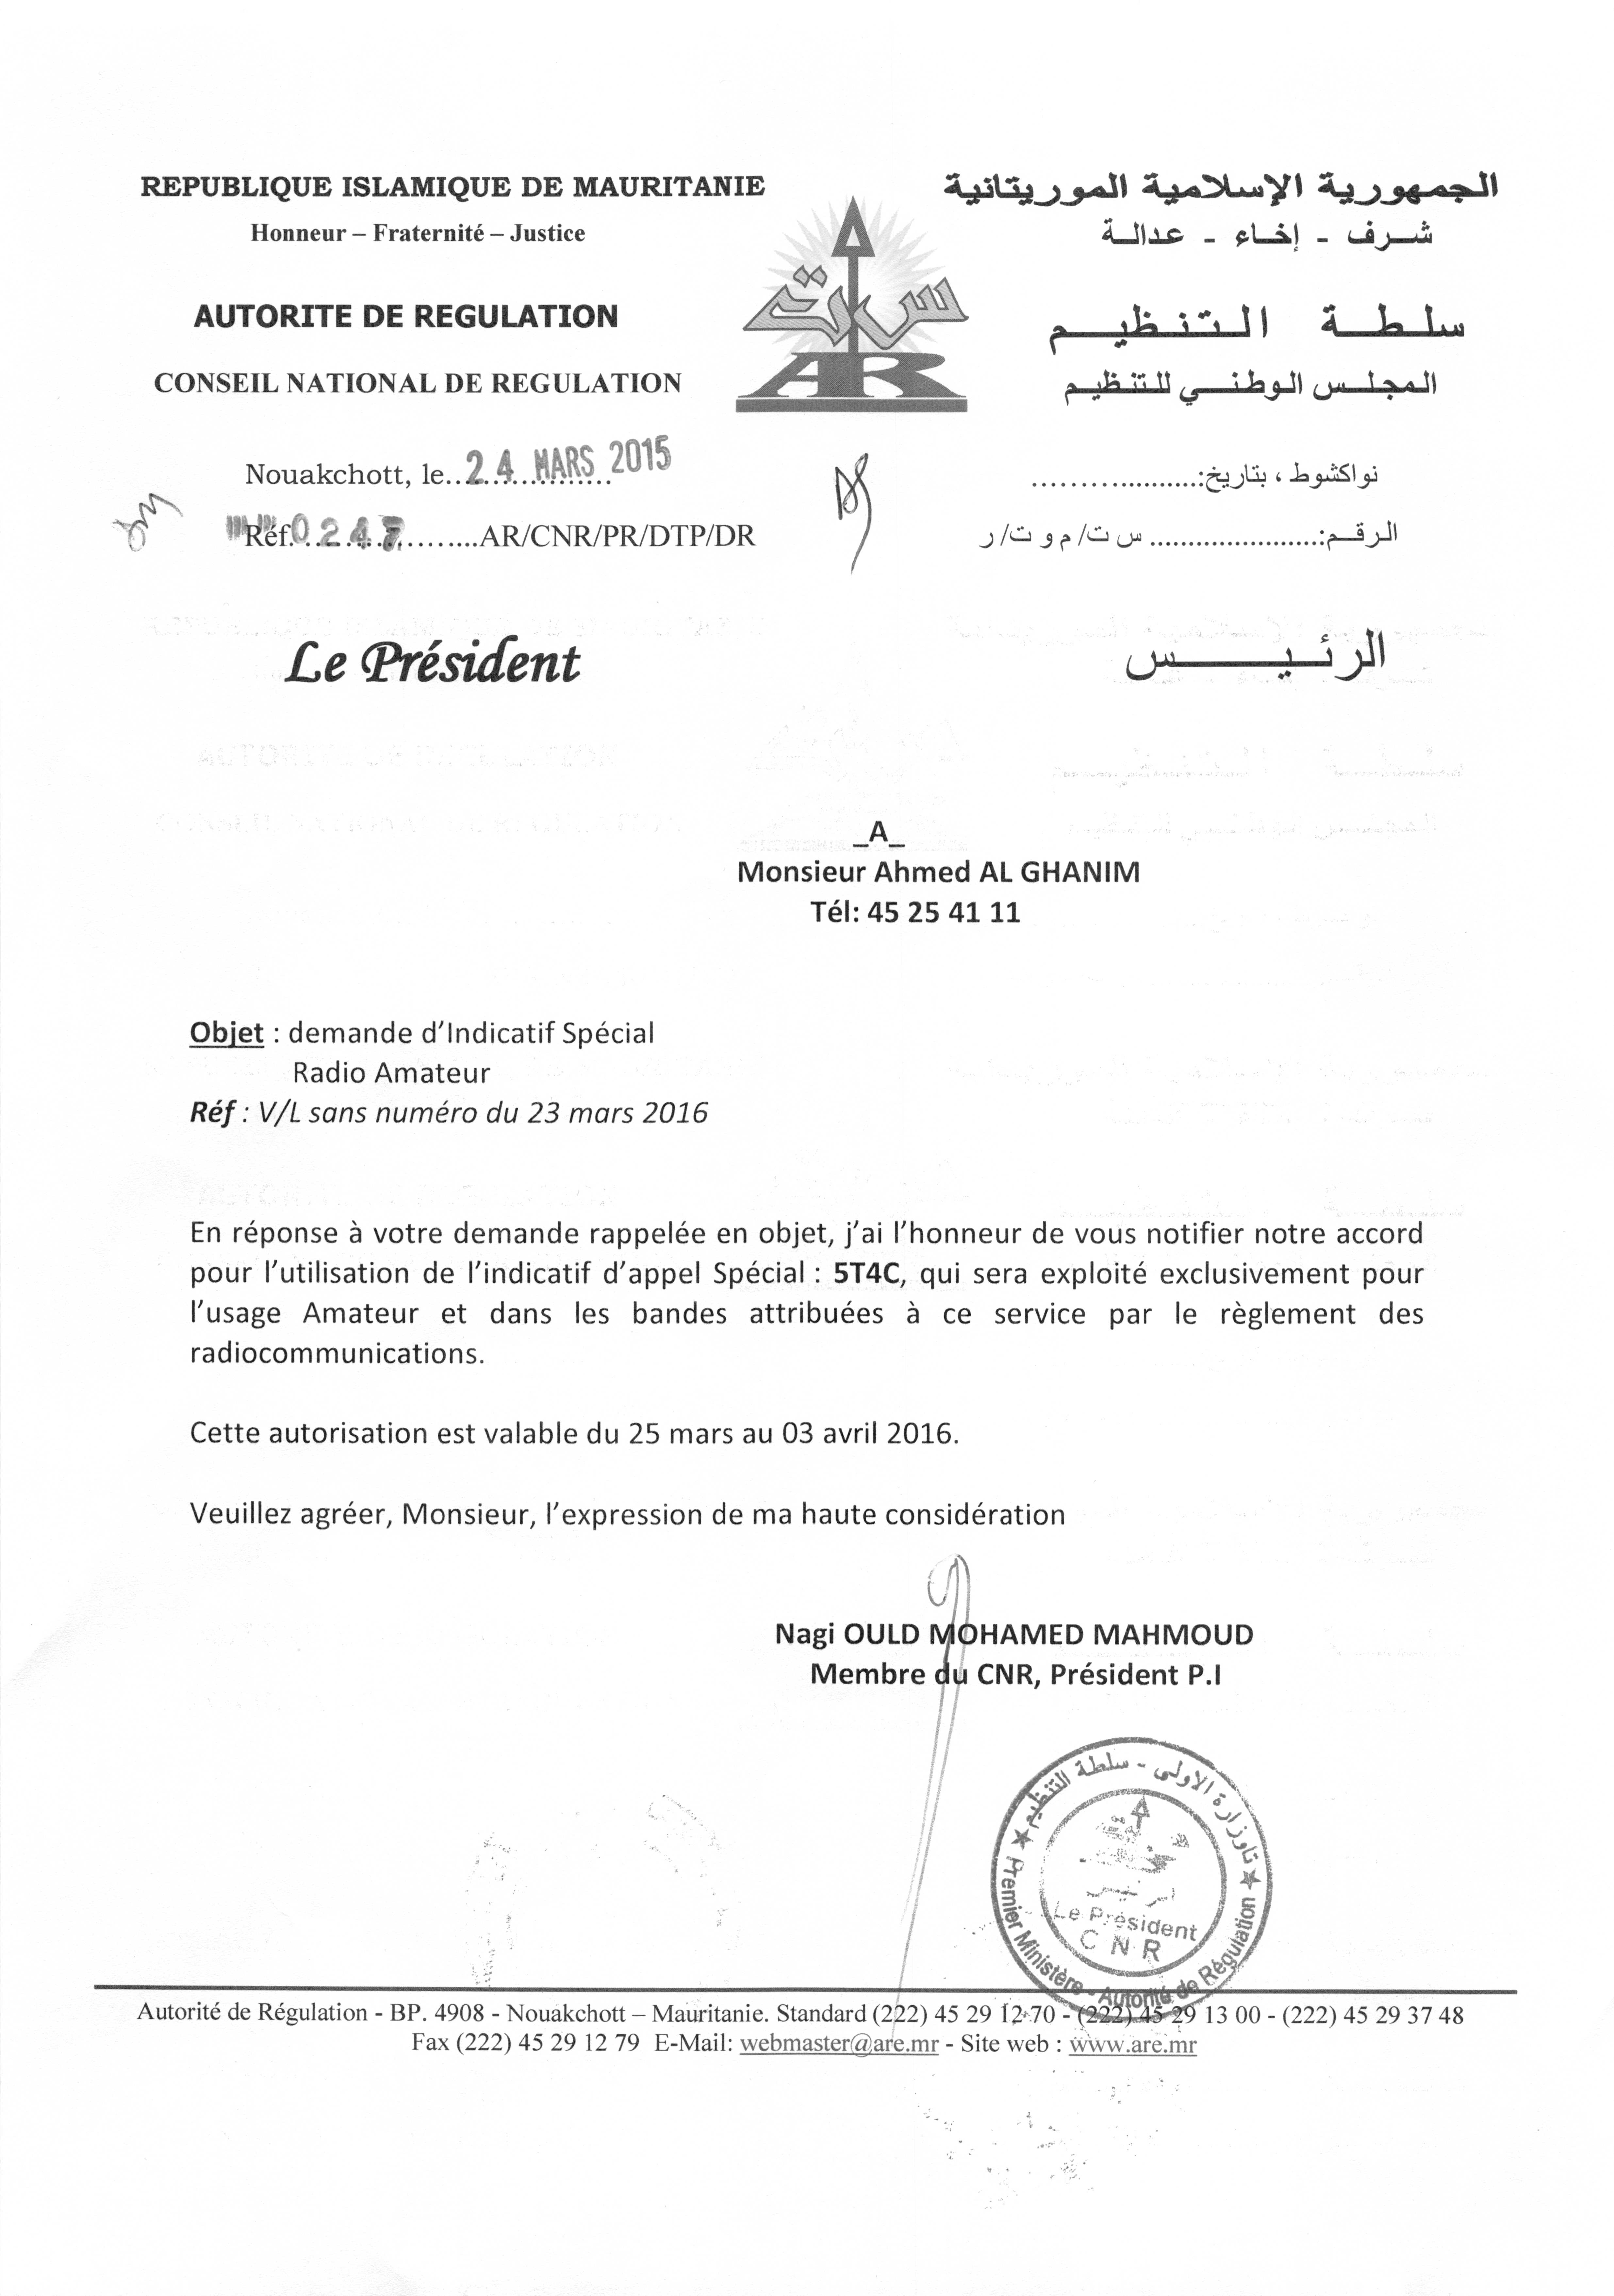 Мавритания 5T4C Лицензия